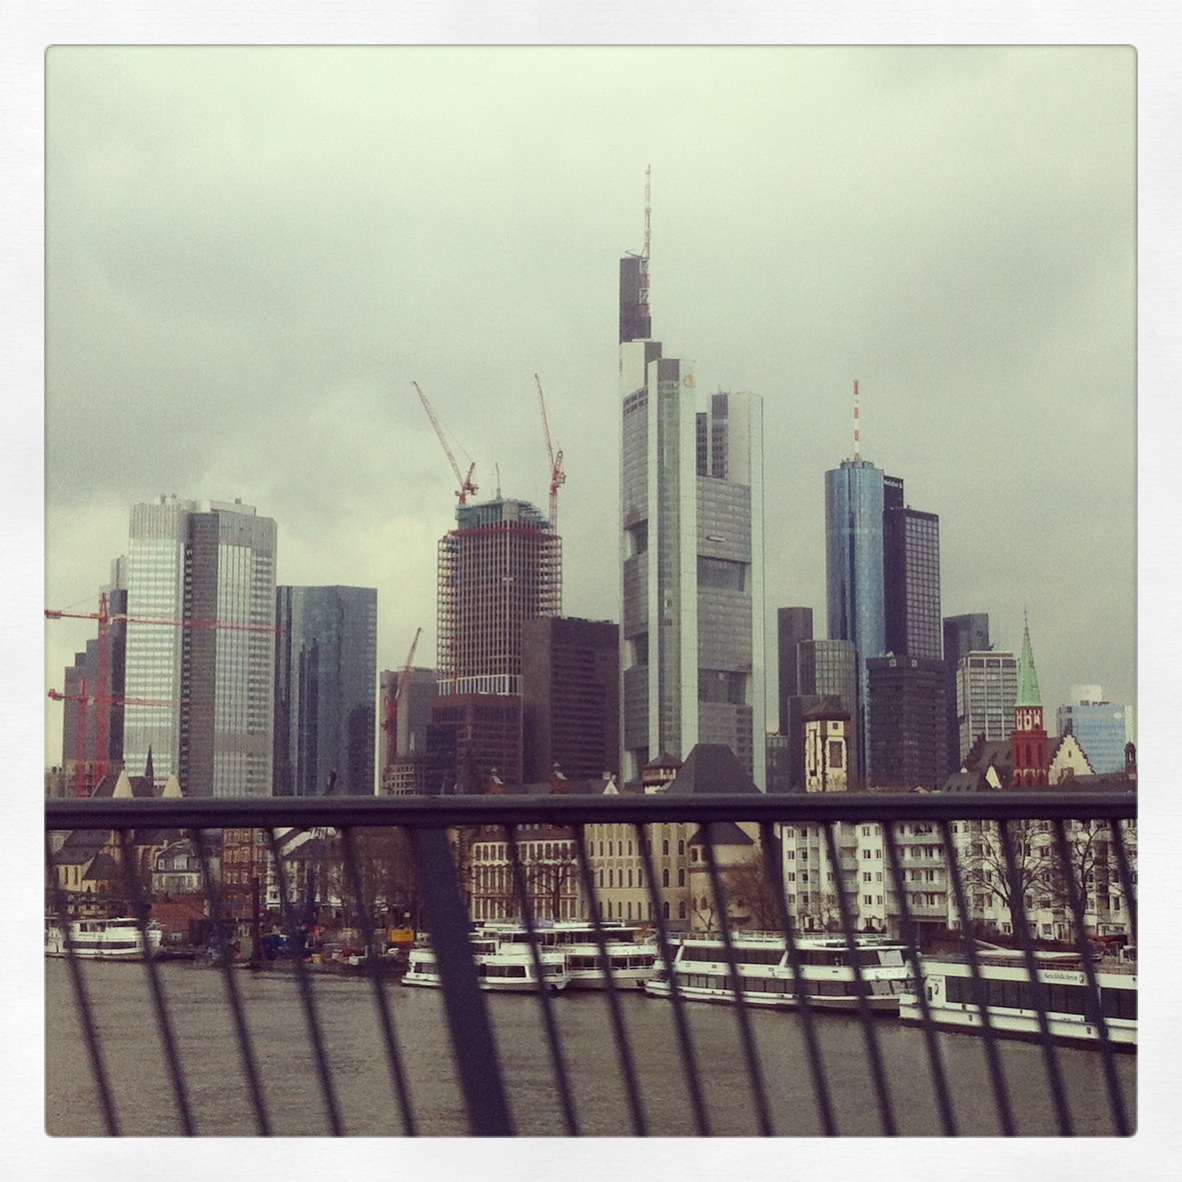 Frankfurt am Main – Ponyhof 18/03/2013